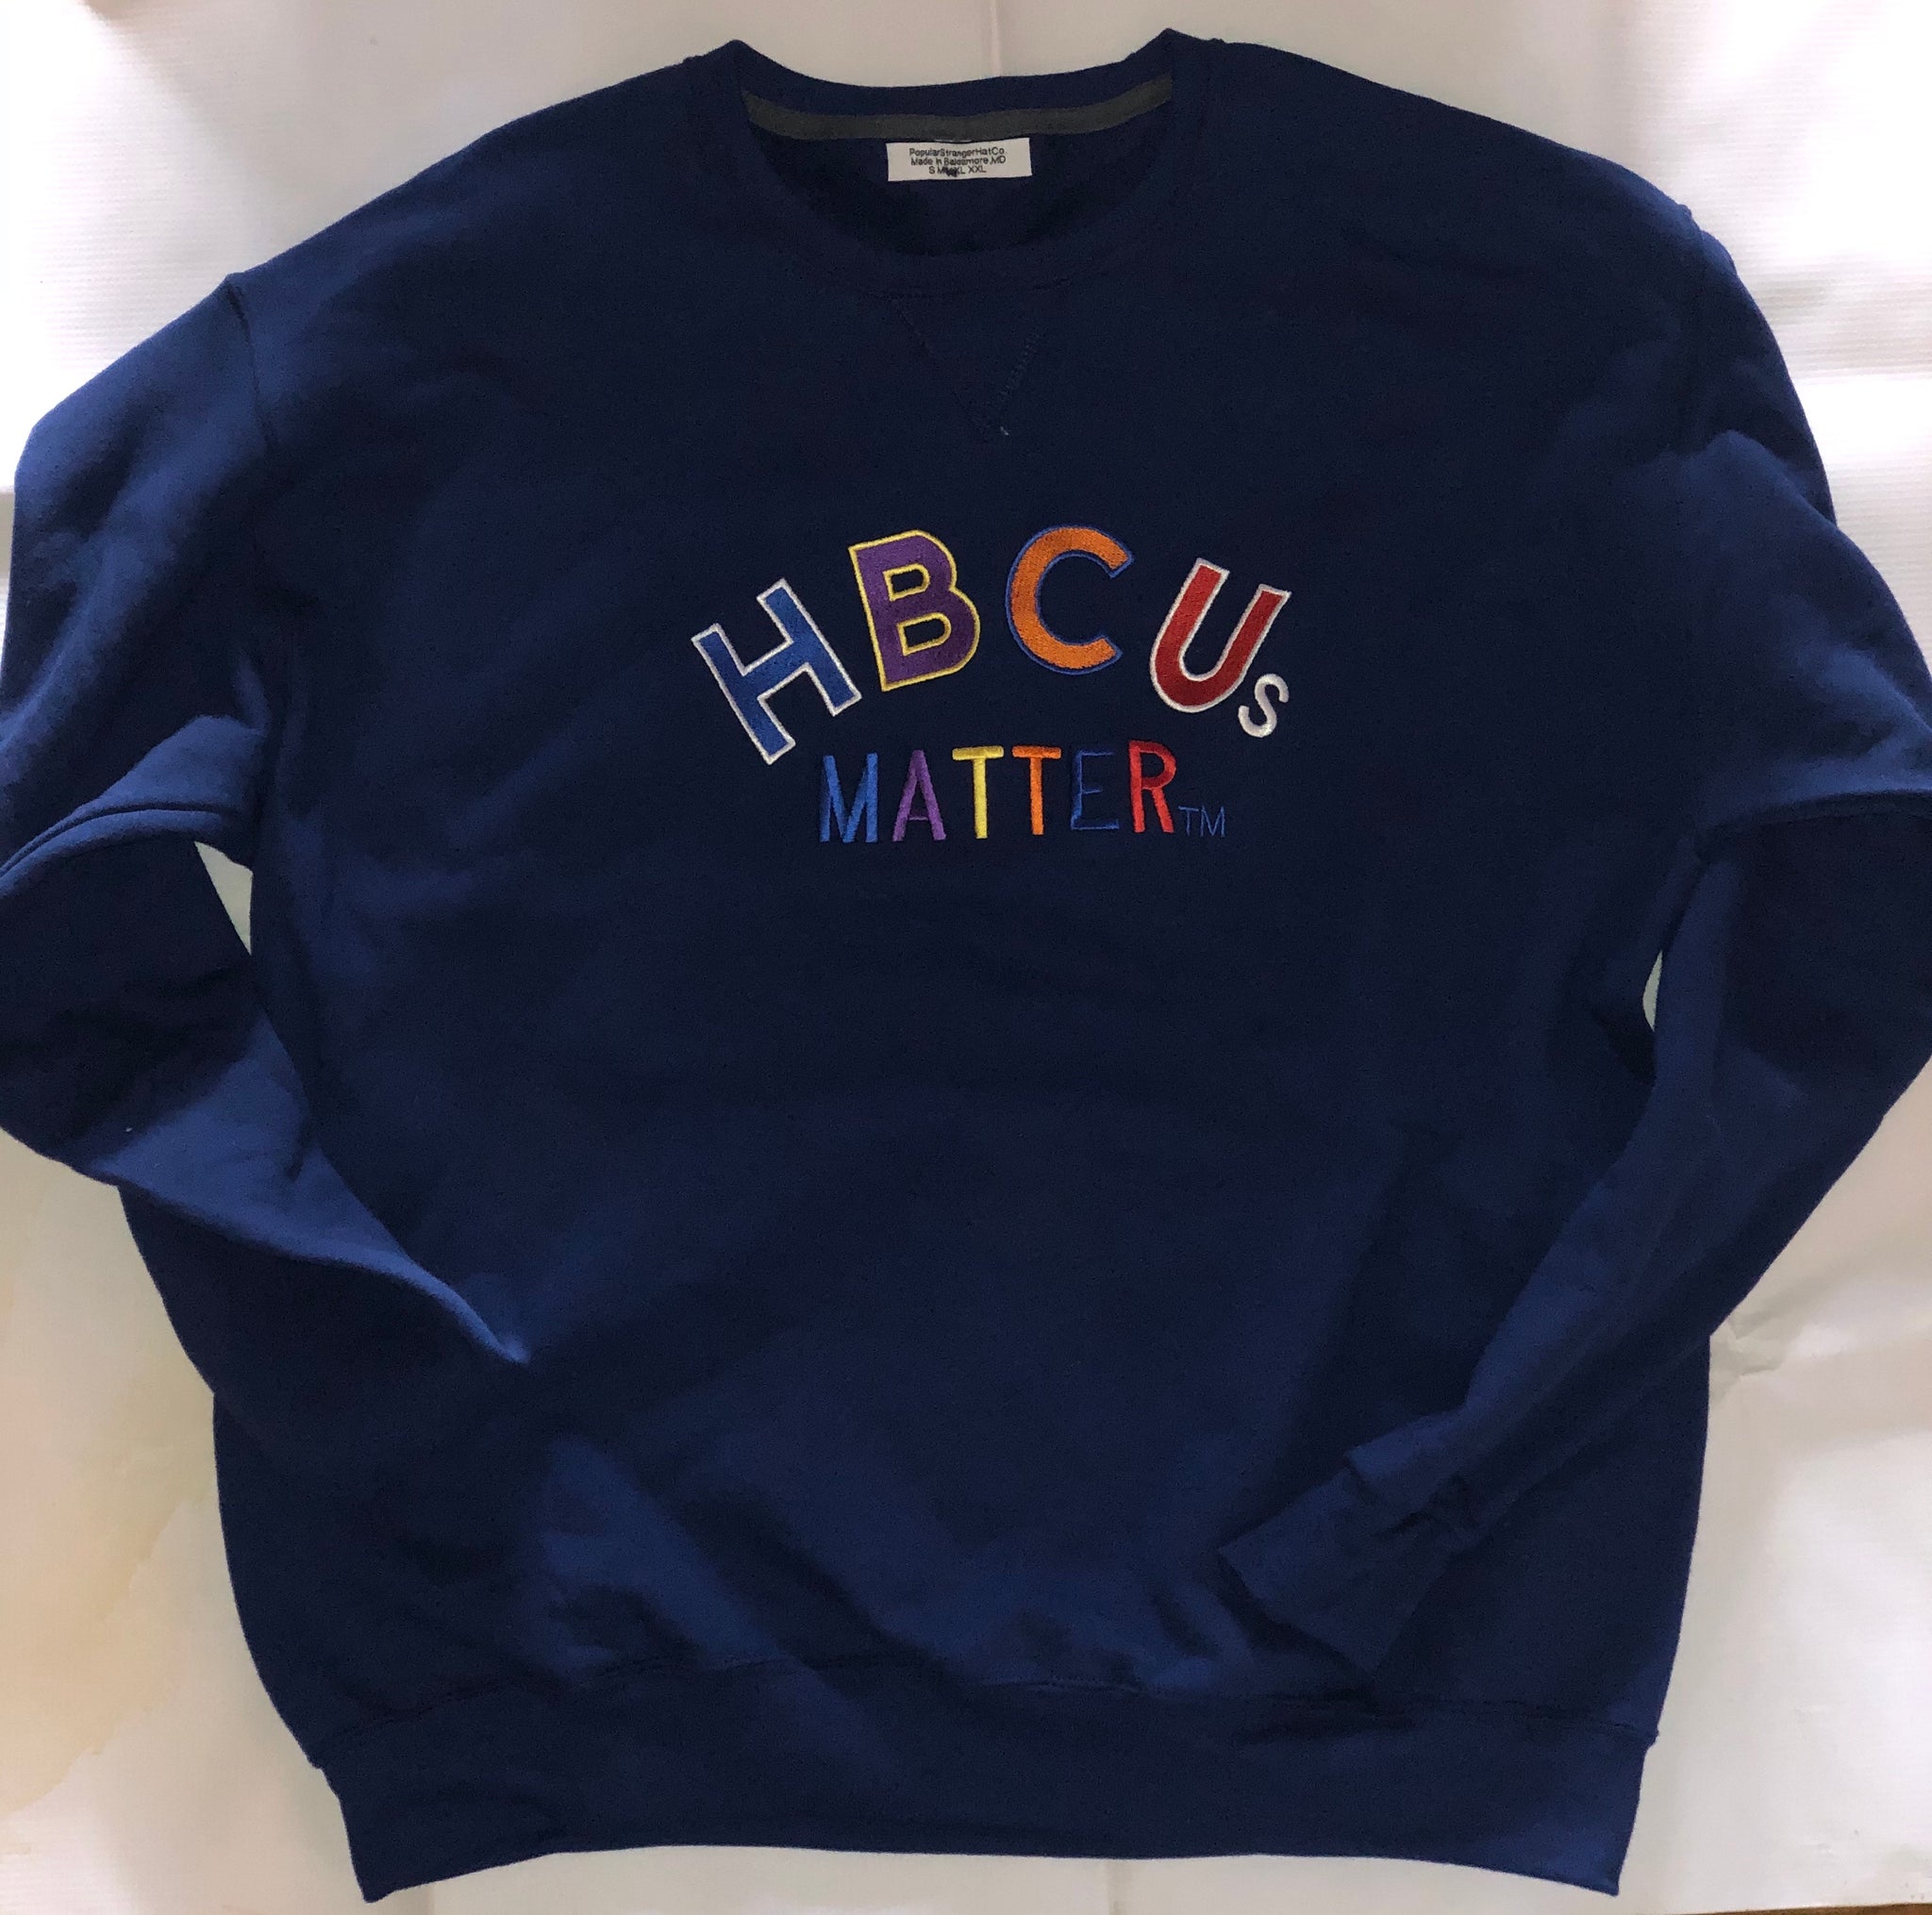 Navy Hbcus matter sweatshirt